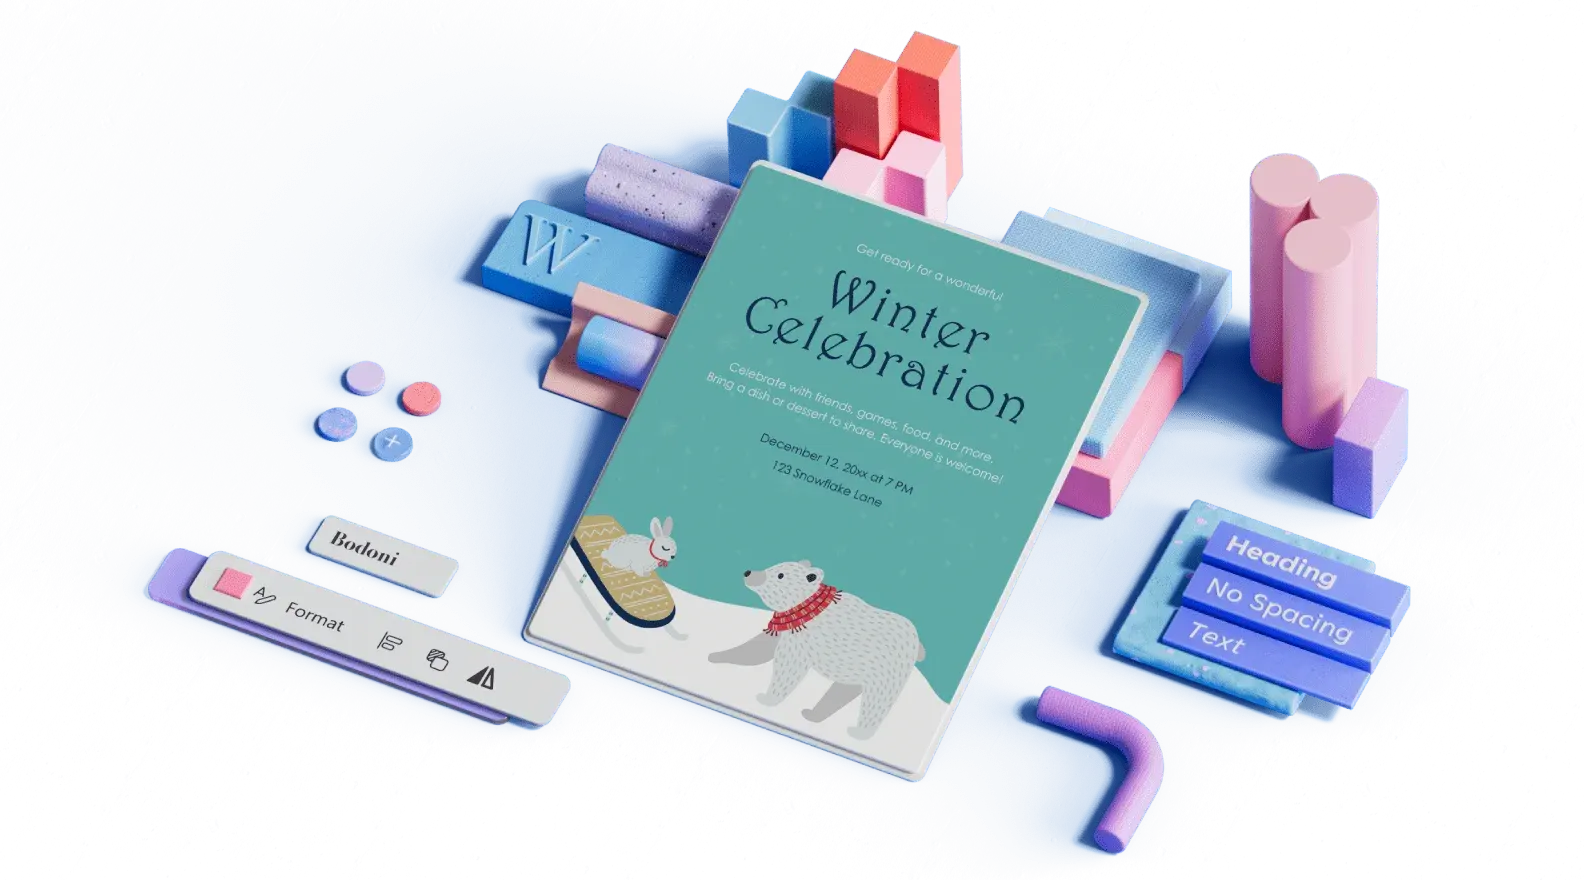 Plantilla de anuncio de celebración de invierno rodeado de elementos de diseño ilustrados en 3D